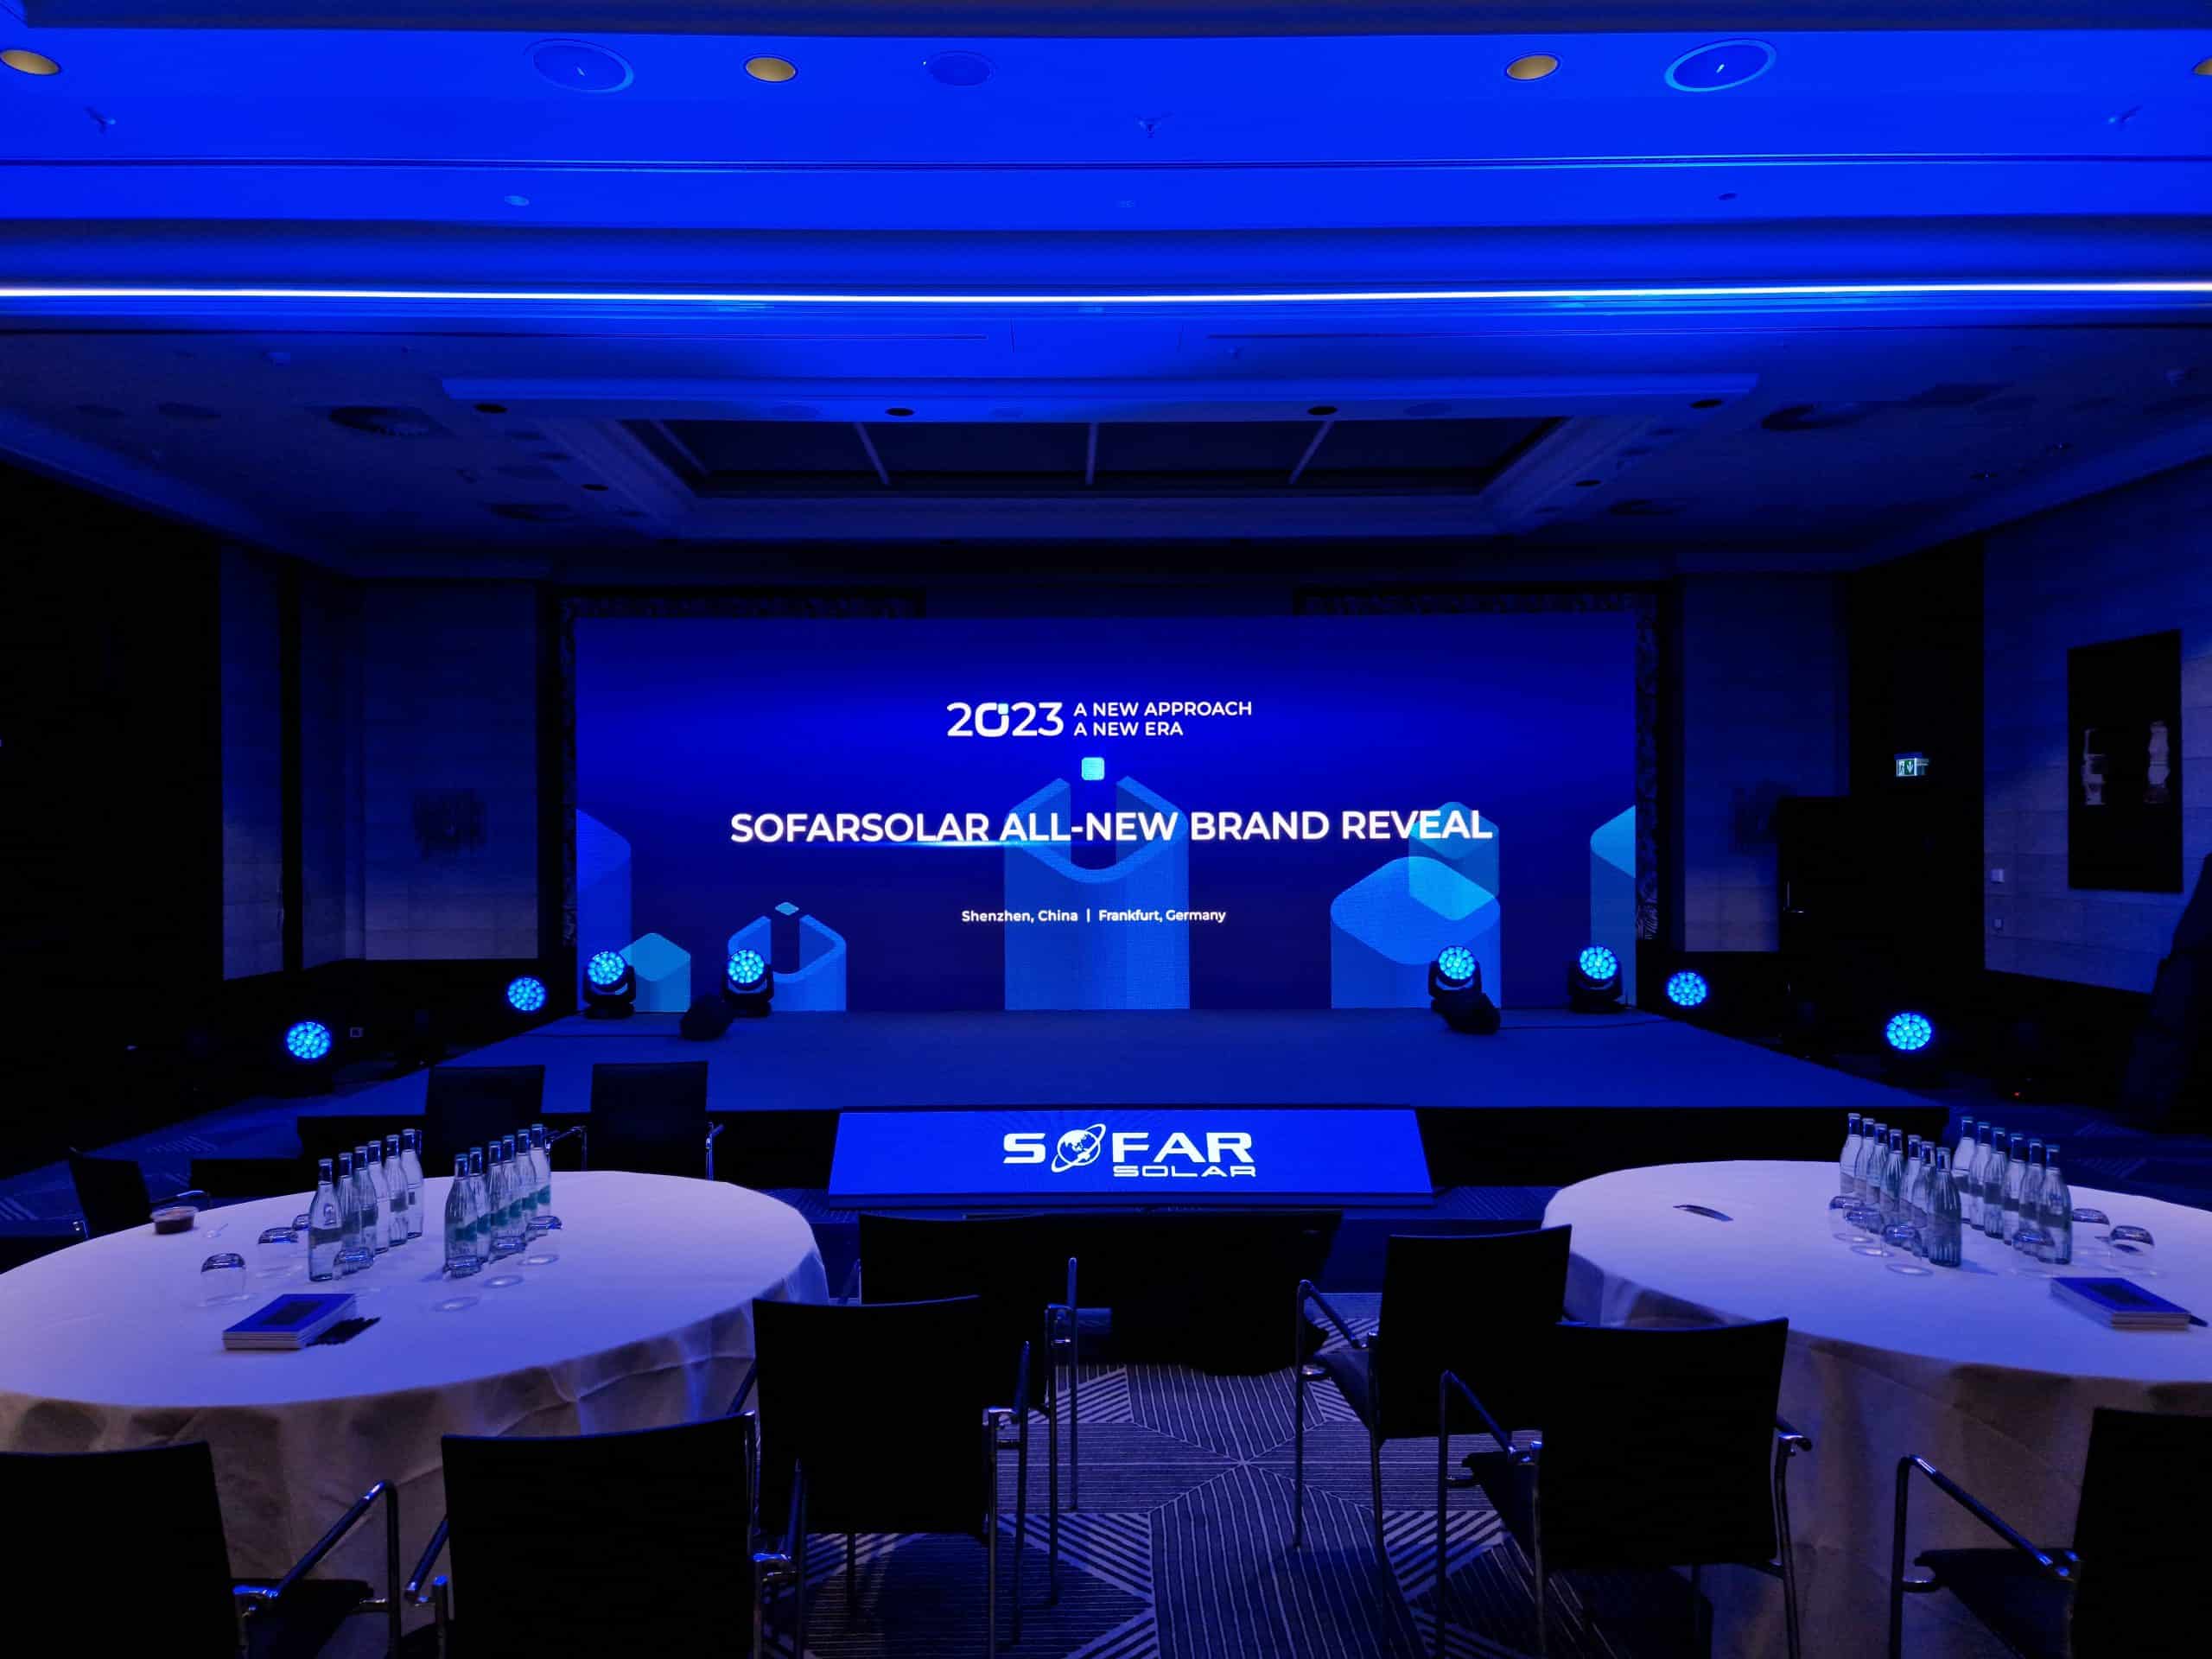 Konferenzraum mit Projektionstechnik und Scheinwerfern blau ausgeleuchtet.